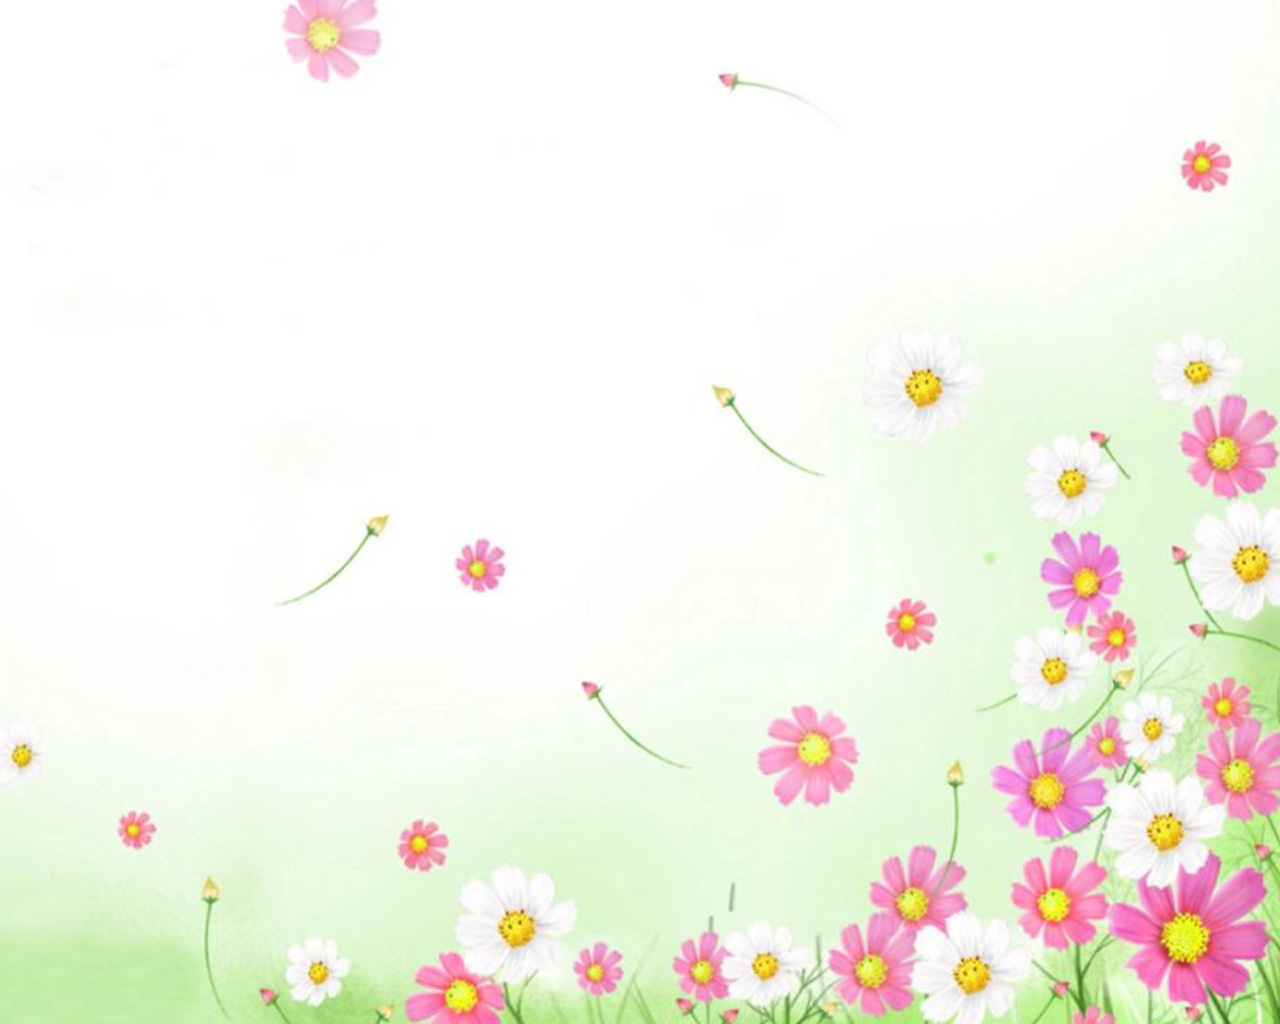  Cartoon  Flower  Background PowerPoint high resolution 